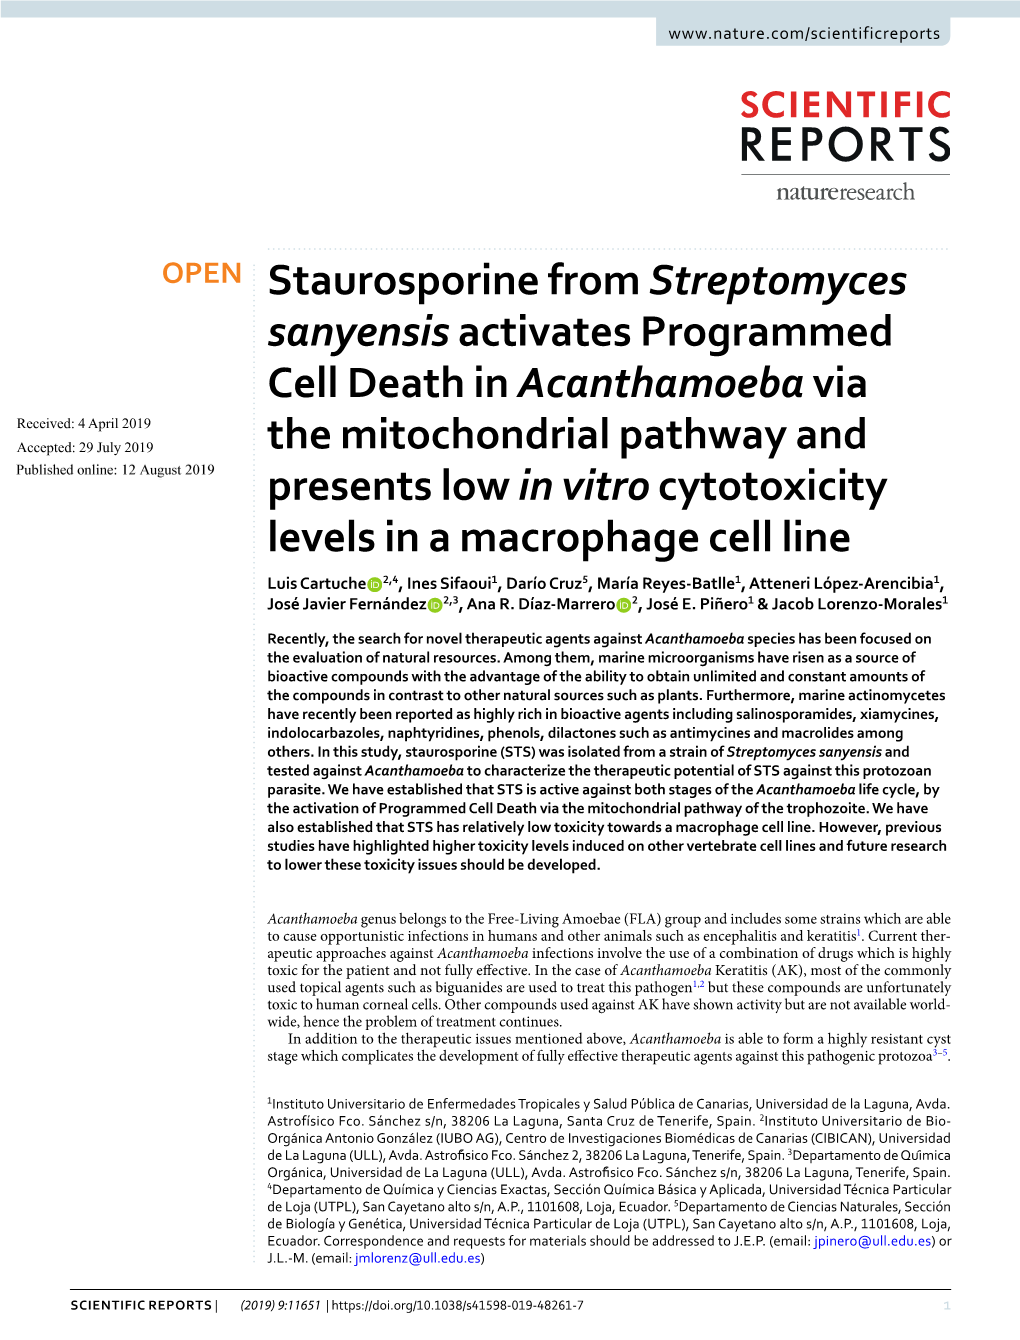 Staurosporine from Streptomyces